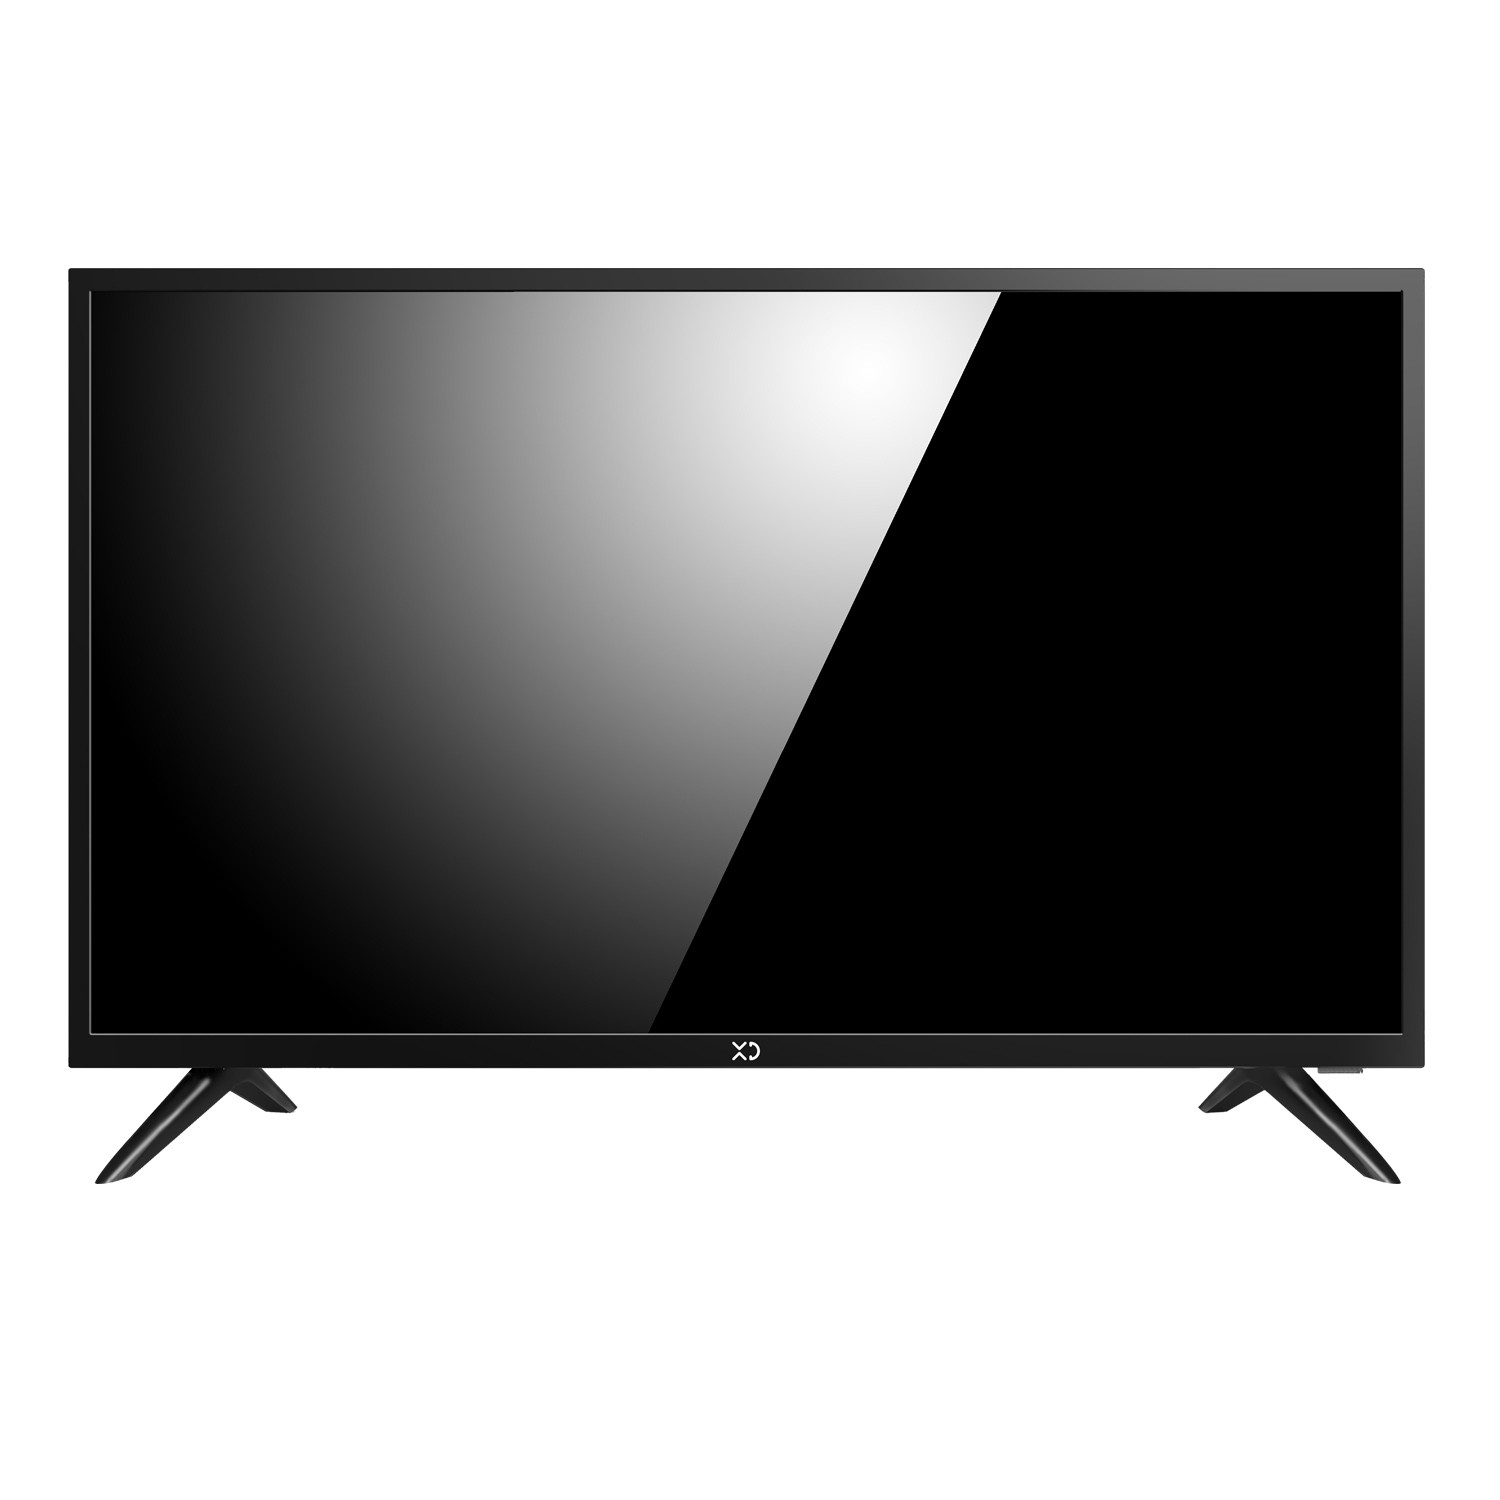 Купить телевизор в спб недорого 32 дюйма